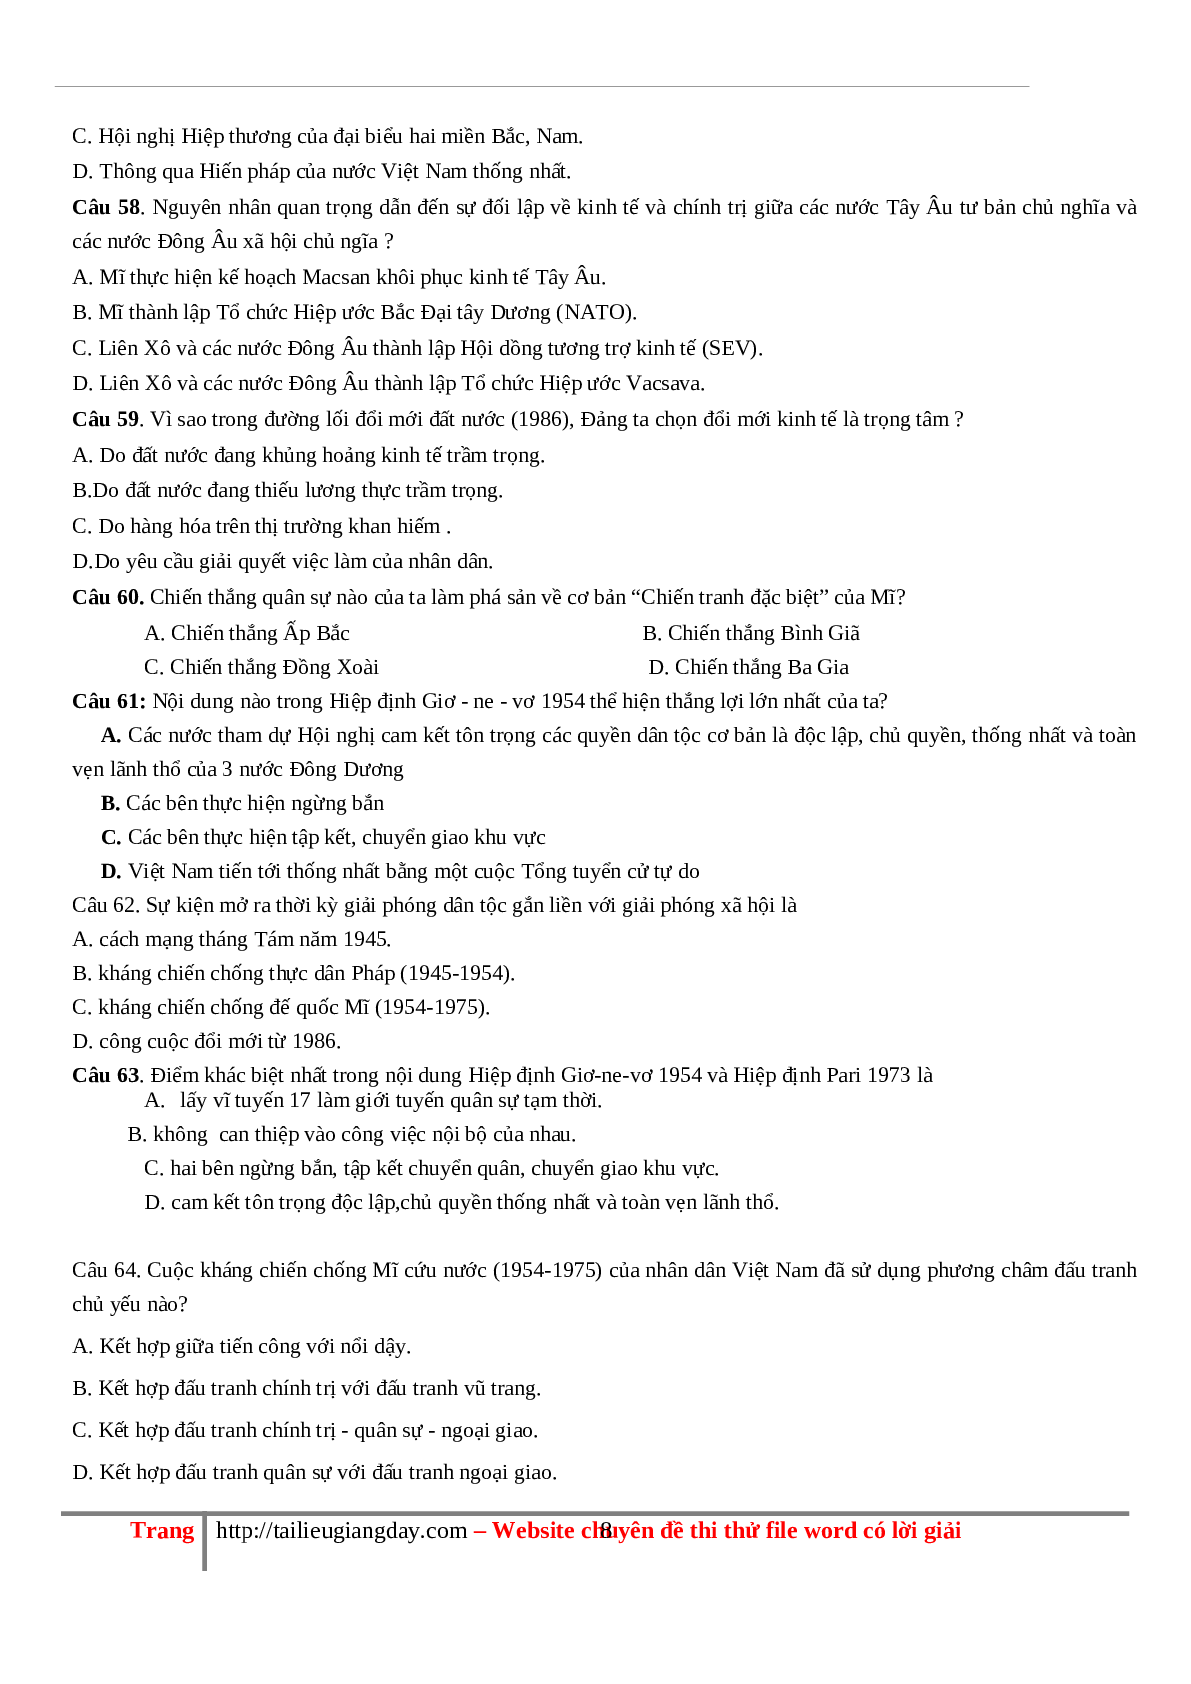 70 câu hỏi ôn tập hay - Lịch Sử 12 (trang 8)